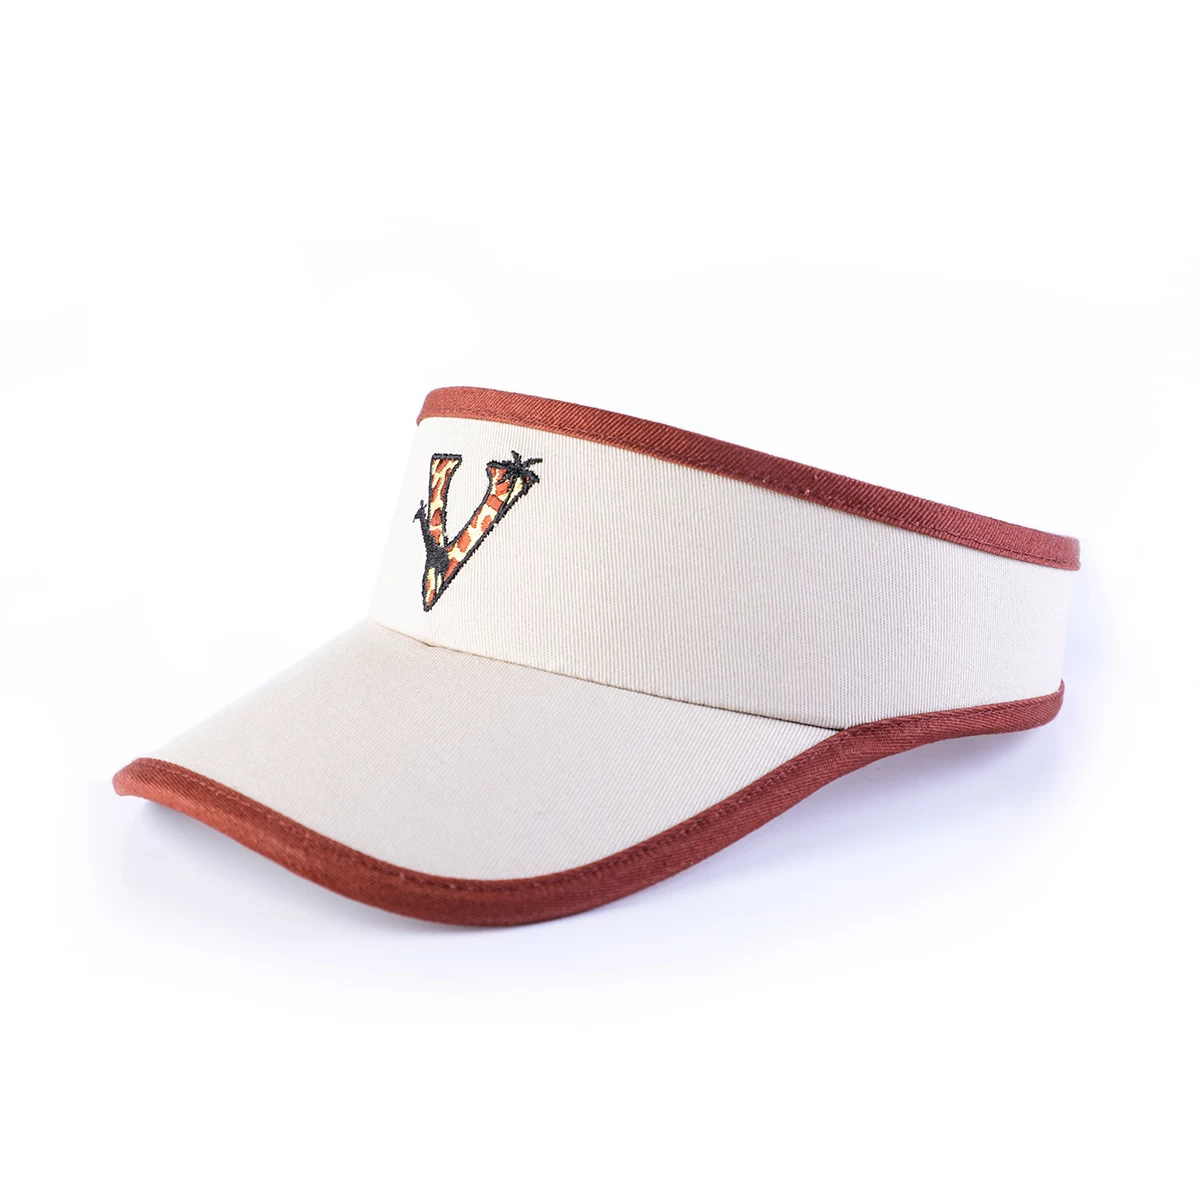 中国 设计VFA徽标运动棉质遮阳帽 制造商